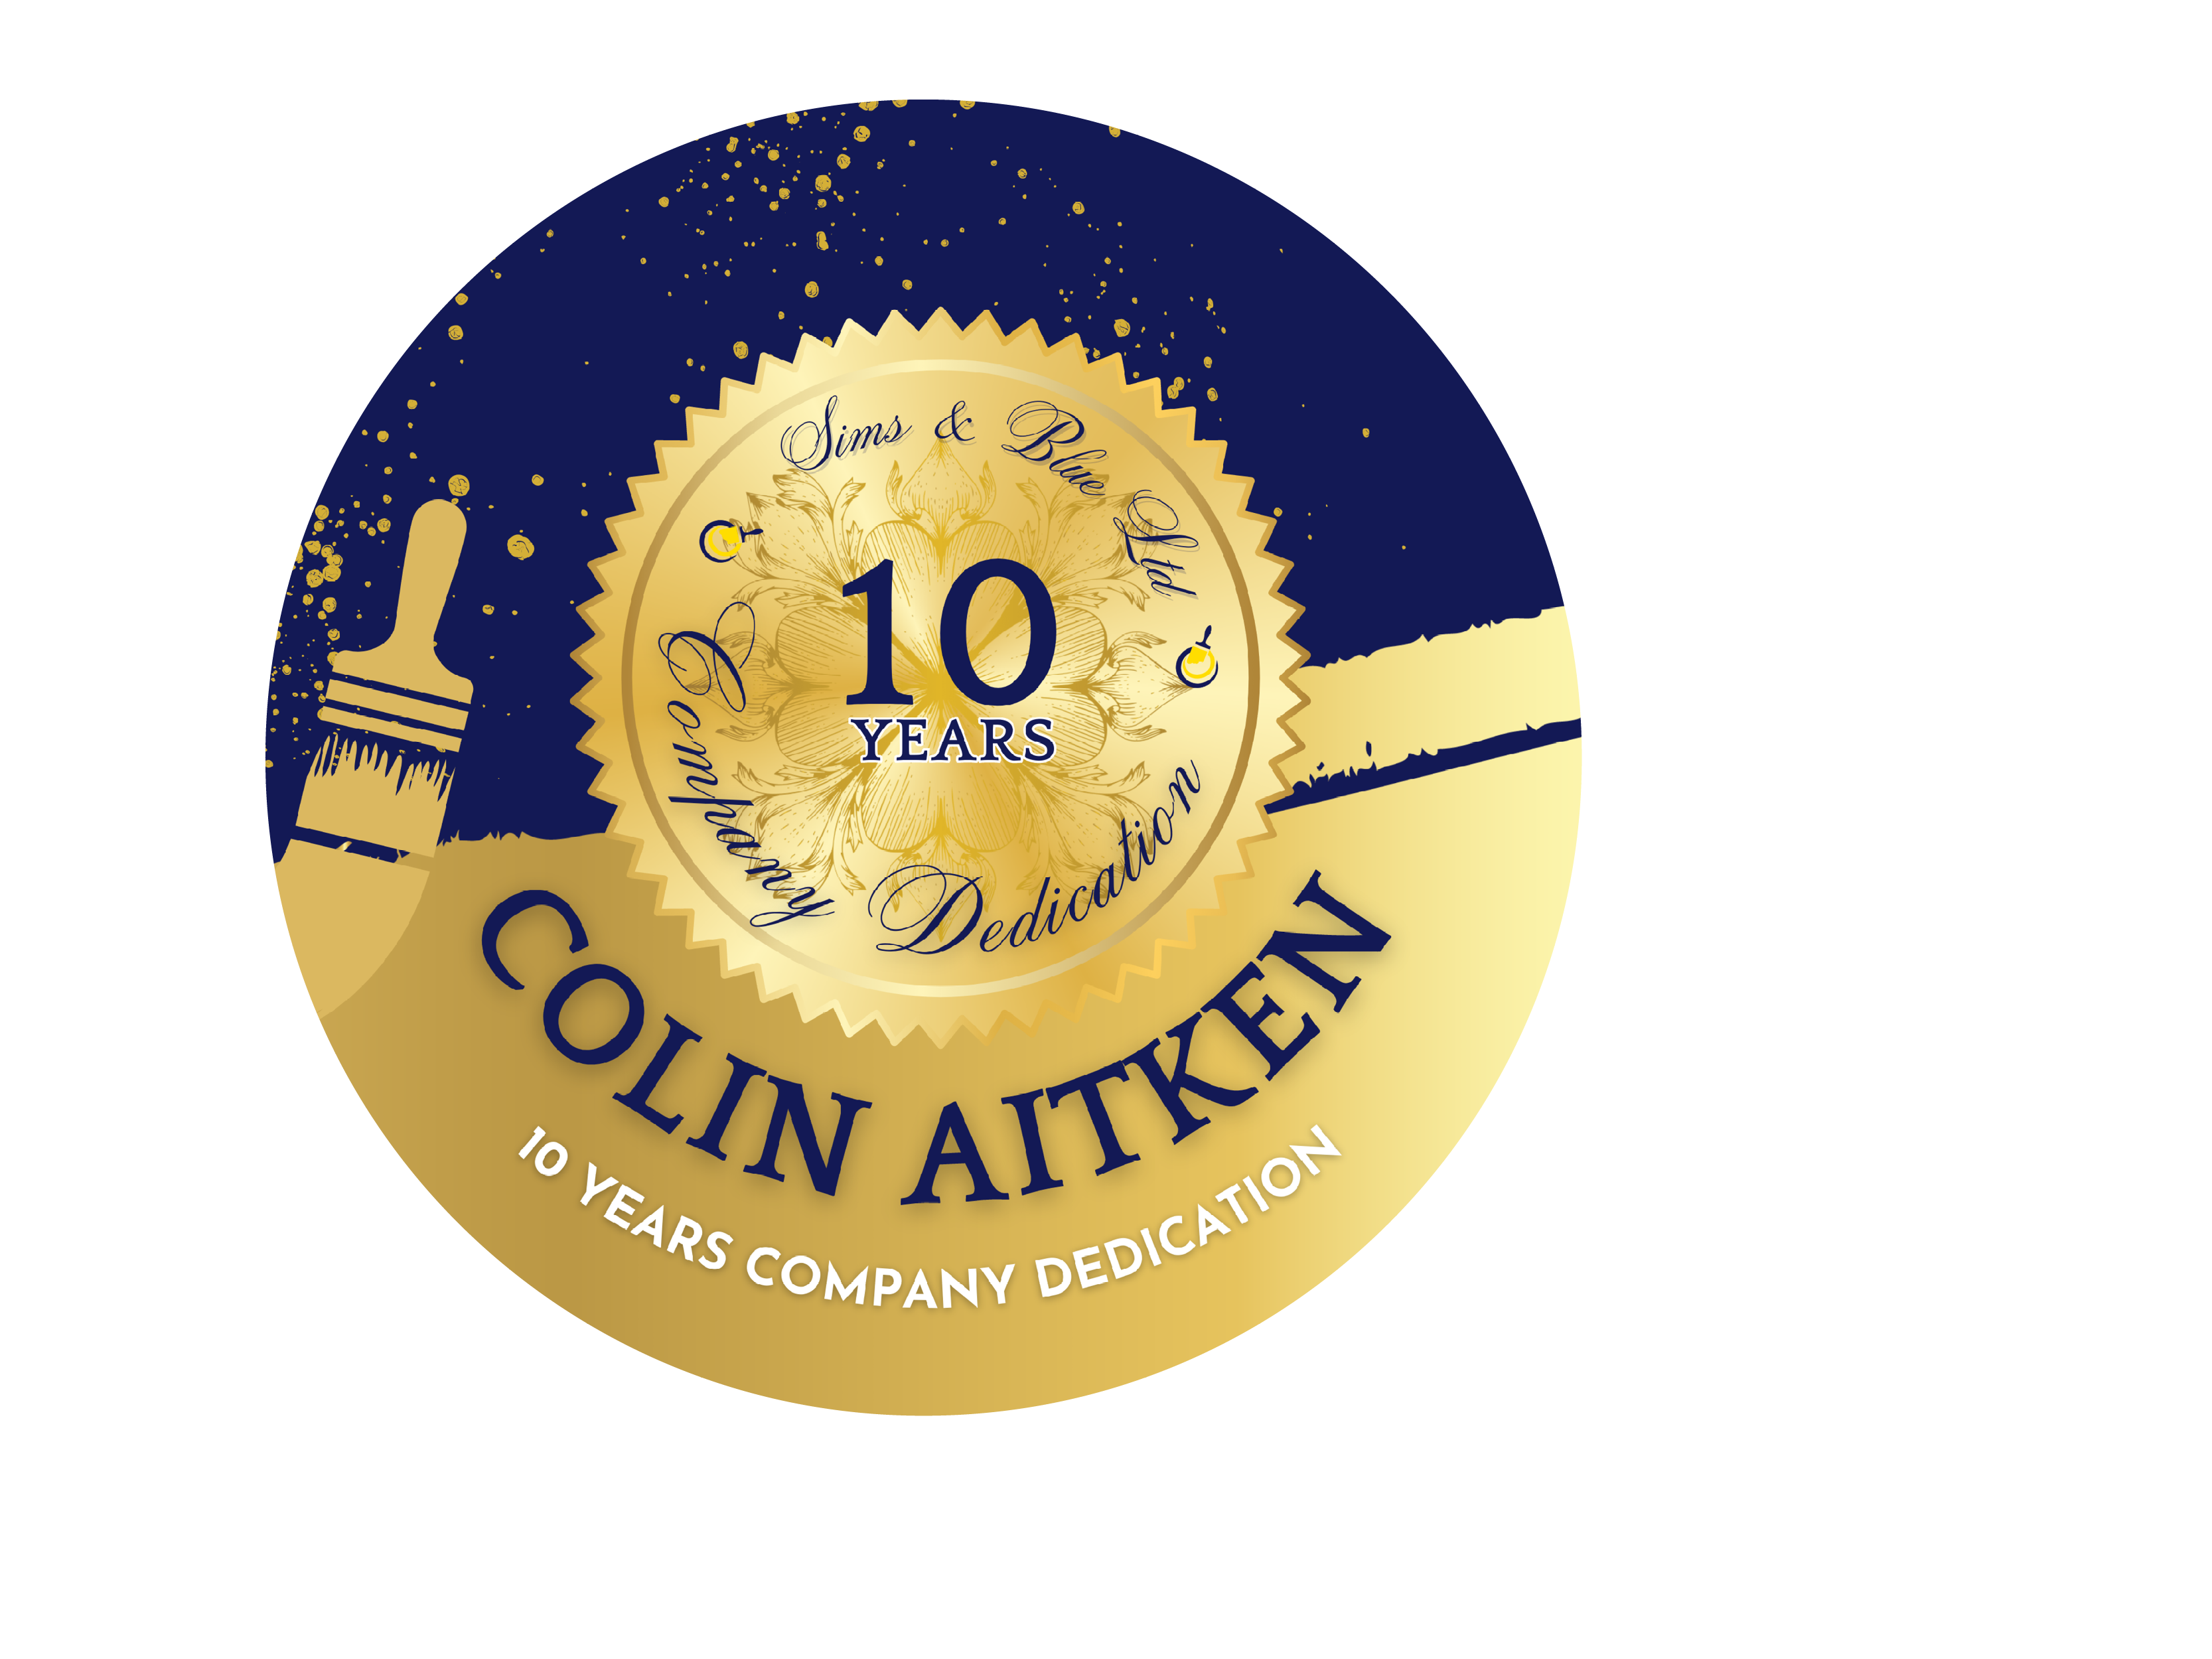 2022 Company Award, 10 Years Company Dedication, Colin Aitken